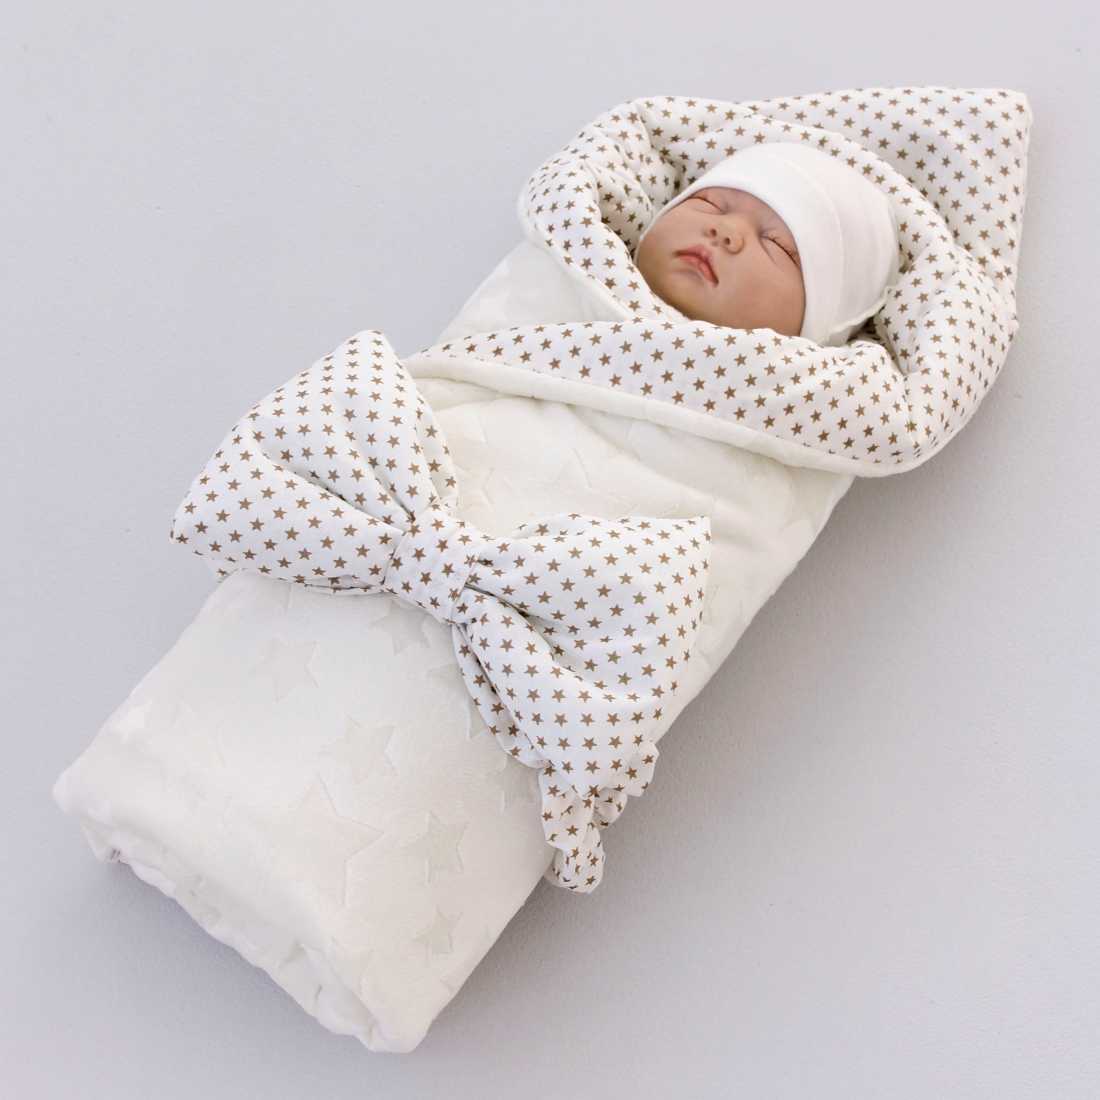 Одеяло для ребенка: как выбрать в кроватку, какой наполнитель лучше